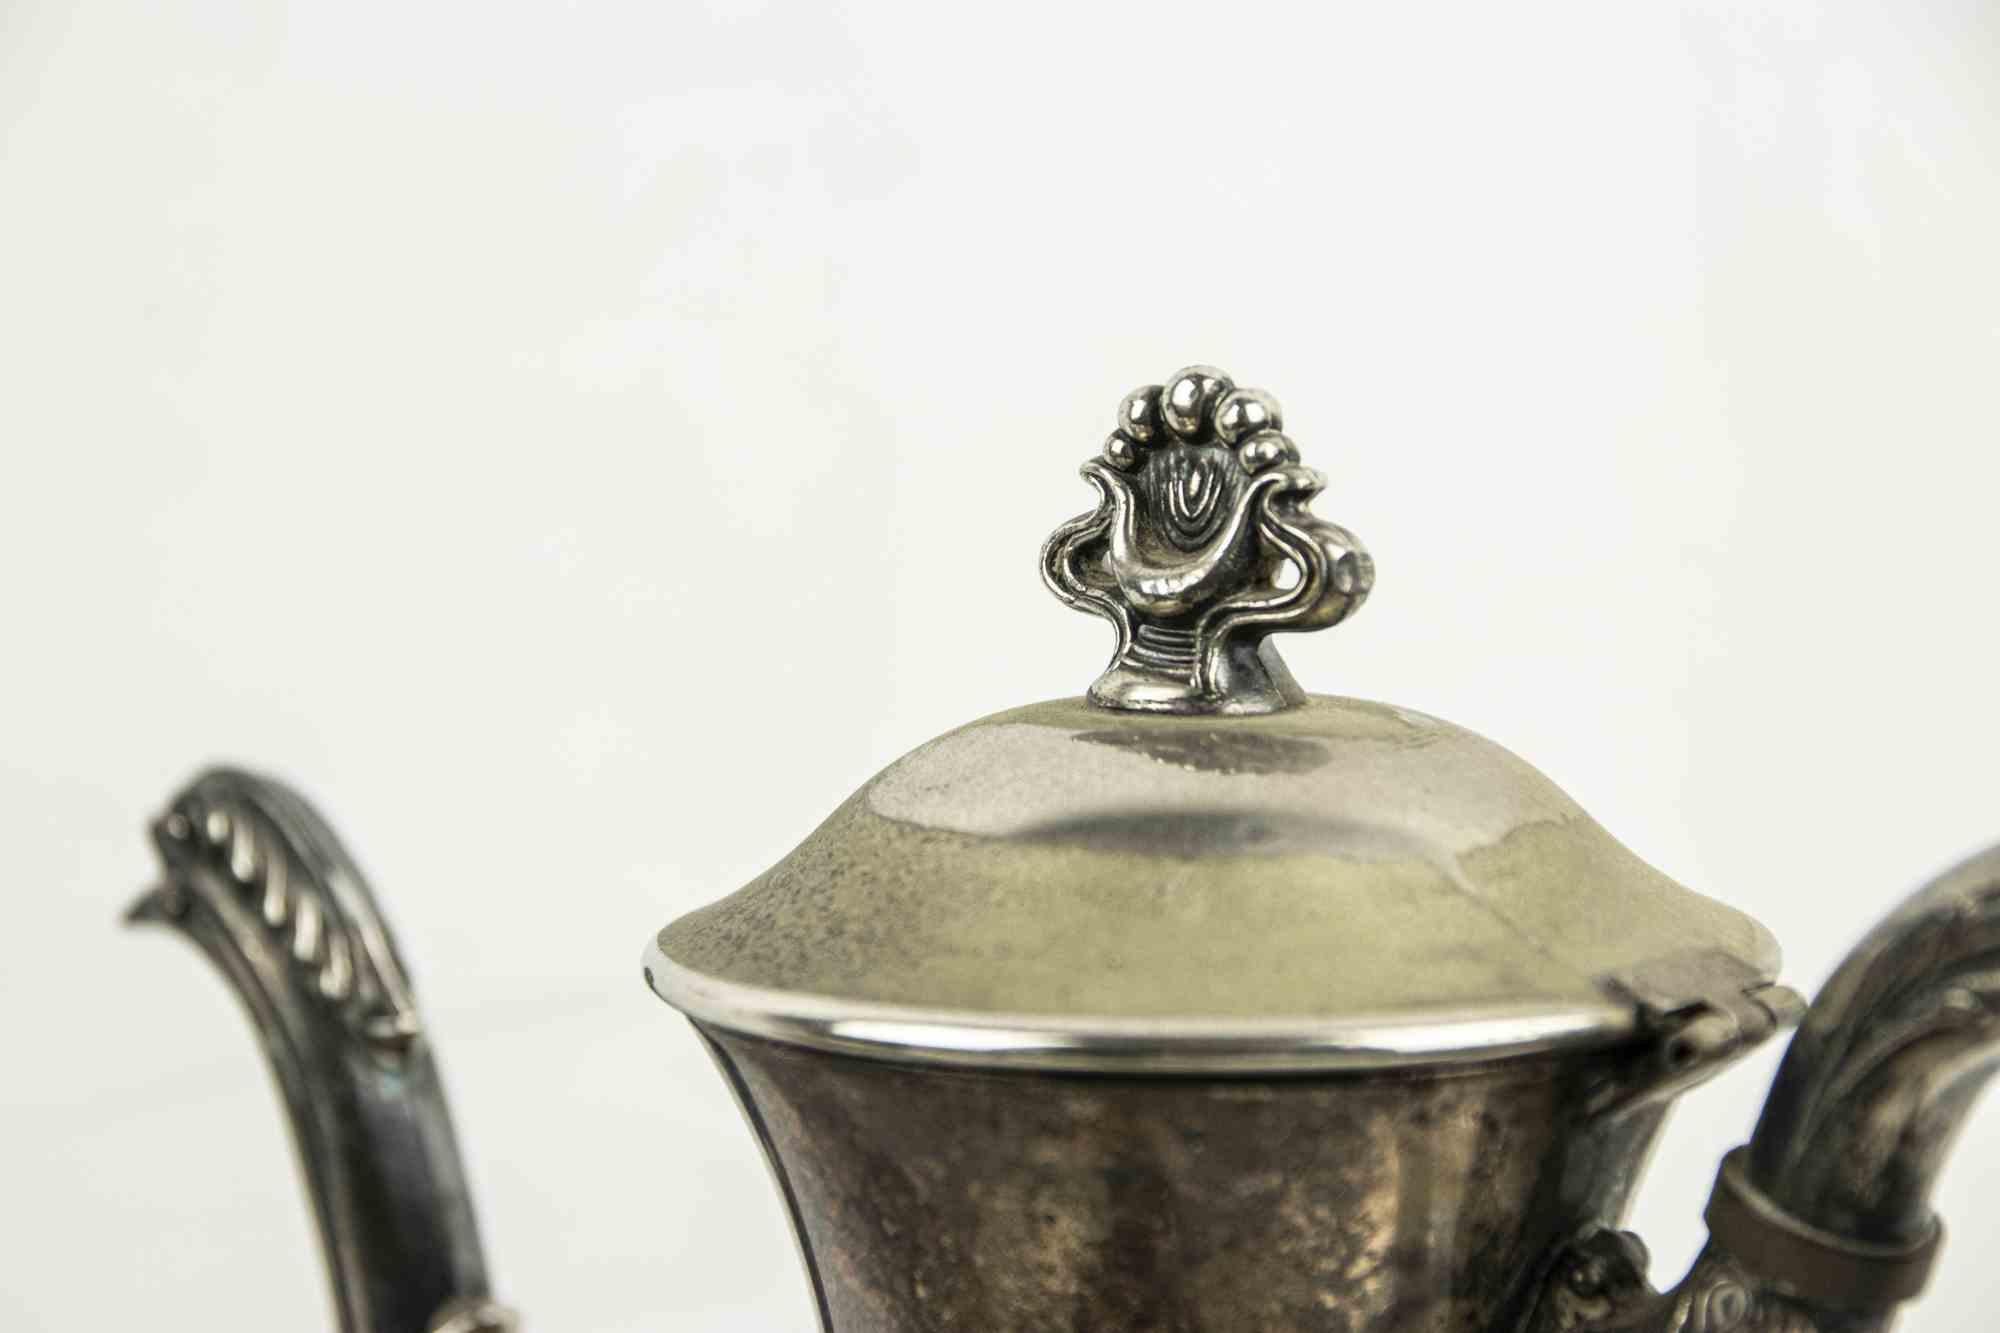 Le service à thé en argent est une pièce d'orfèvrerie originale réalisée par un fabricant italien au début du 20e siècle.

Un service en argent composé de trois théières et de deux petits bols.

Conditions correctes

Dimensions :

Théière 1 : 24 x